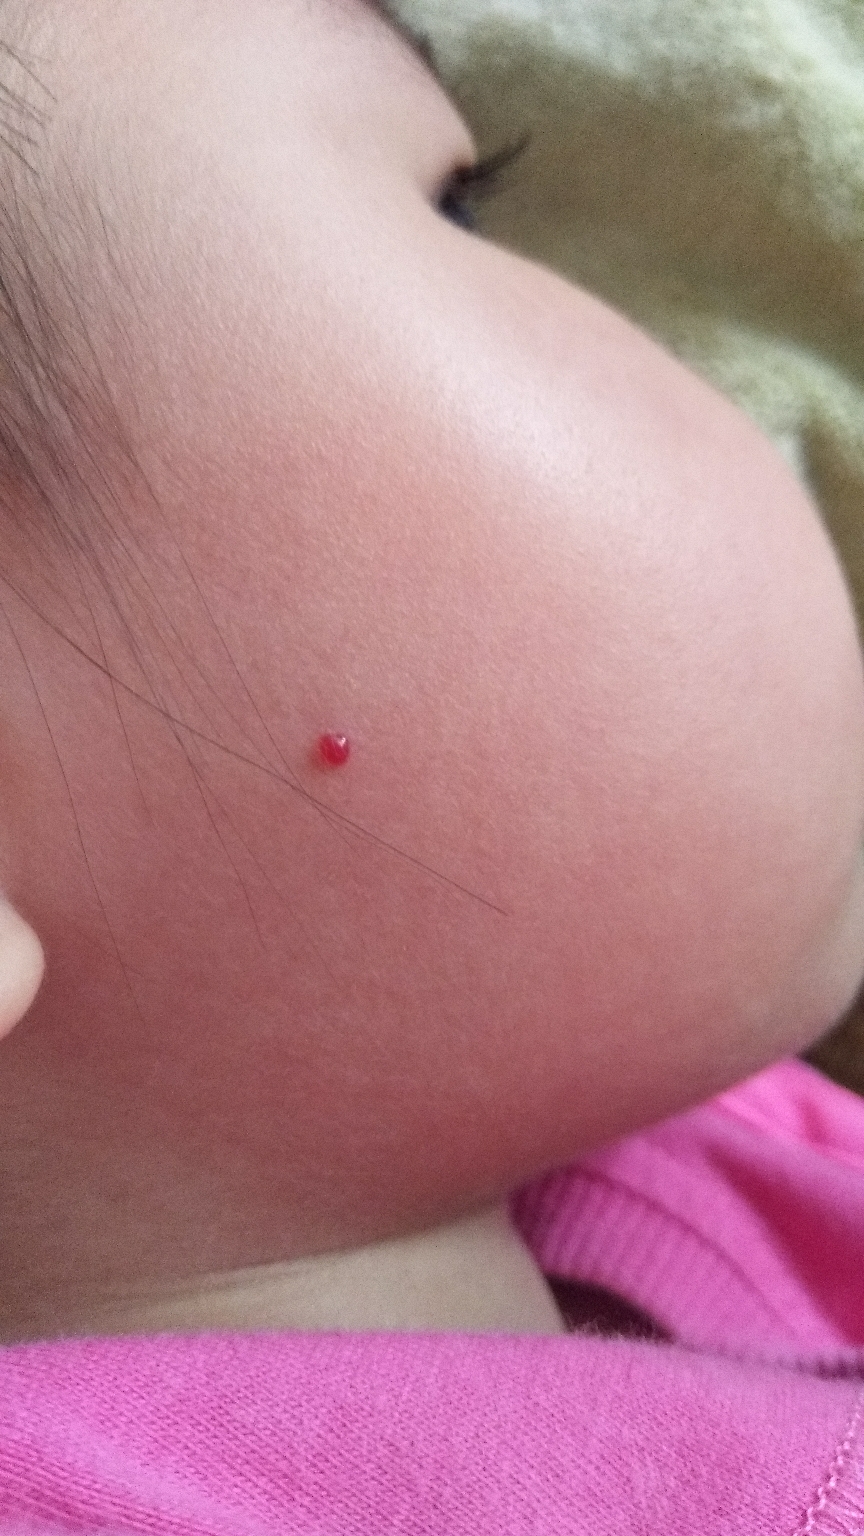 我家宝宝三岁,脸上突然发现一个血点包,人说是血管痣,担心不知道怎么